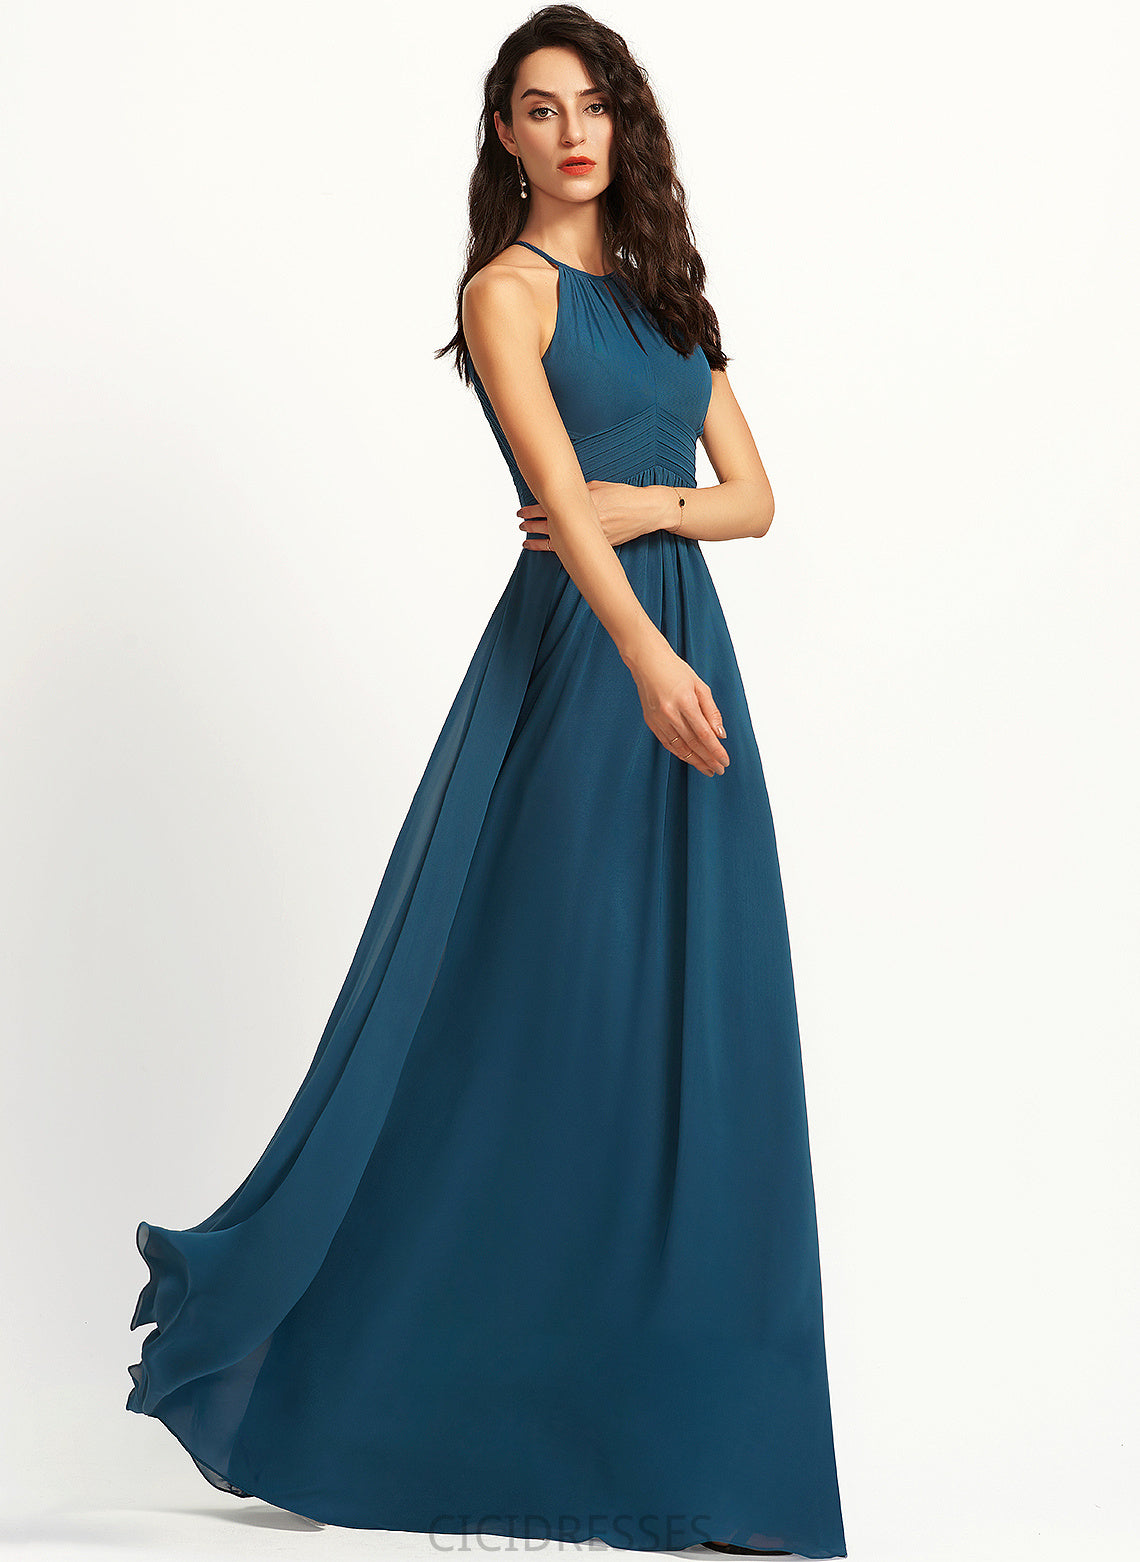 A-Line Neckline ScoopNeck Fabric Floor-Length Length Silhouette Ruffle Embellishment Zion A-Line/Princess Natural Waist Bridesmaid Dresses